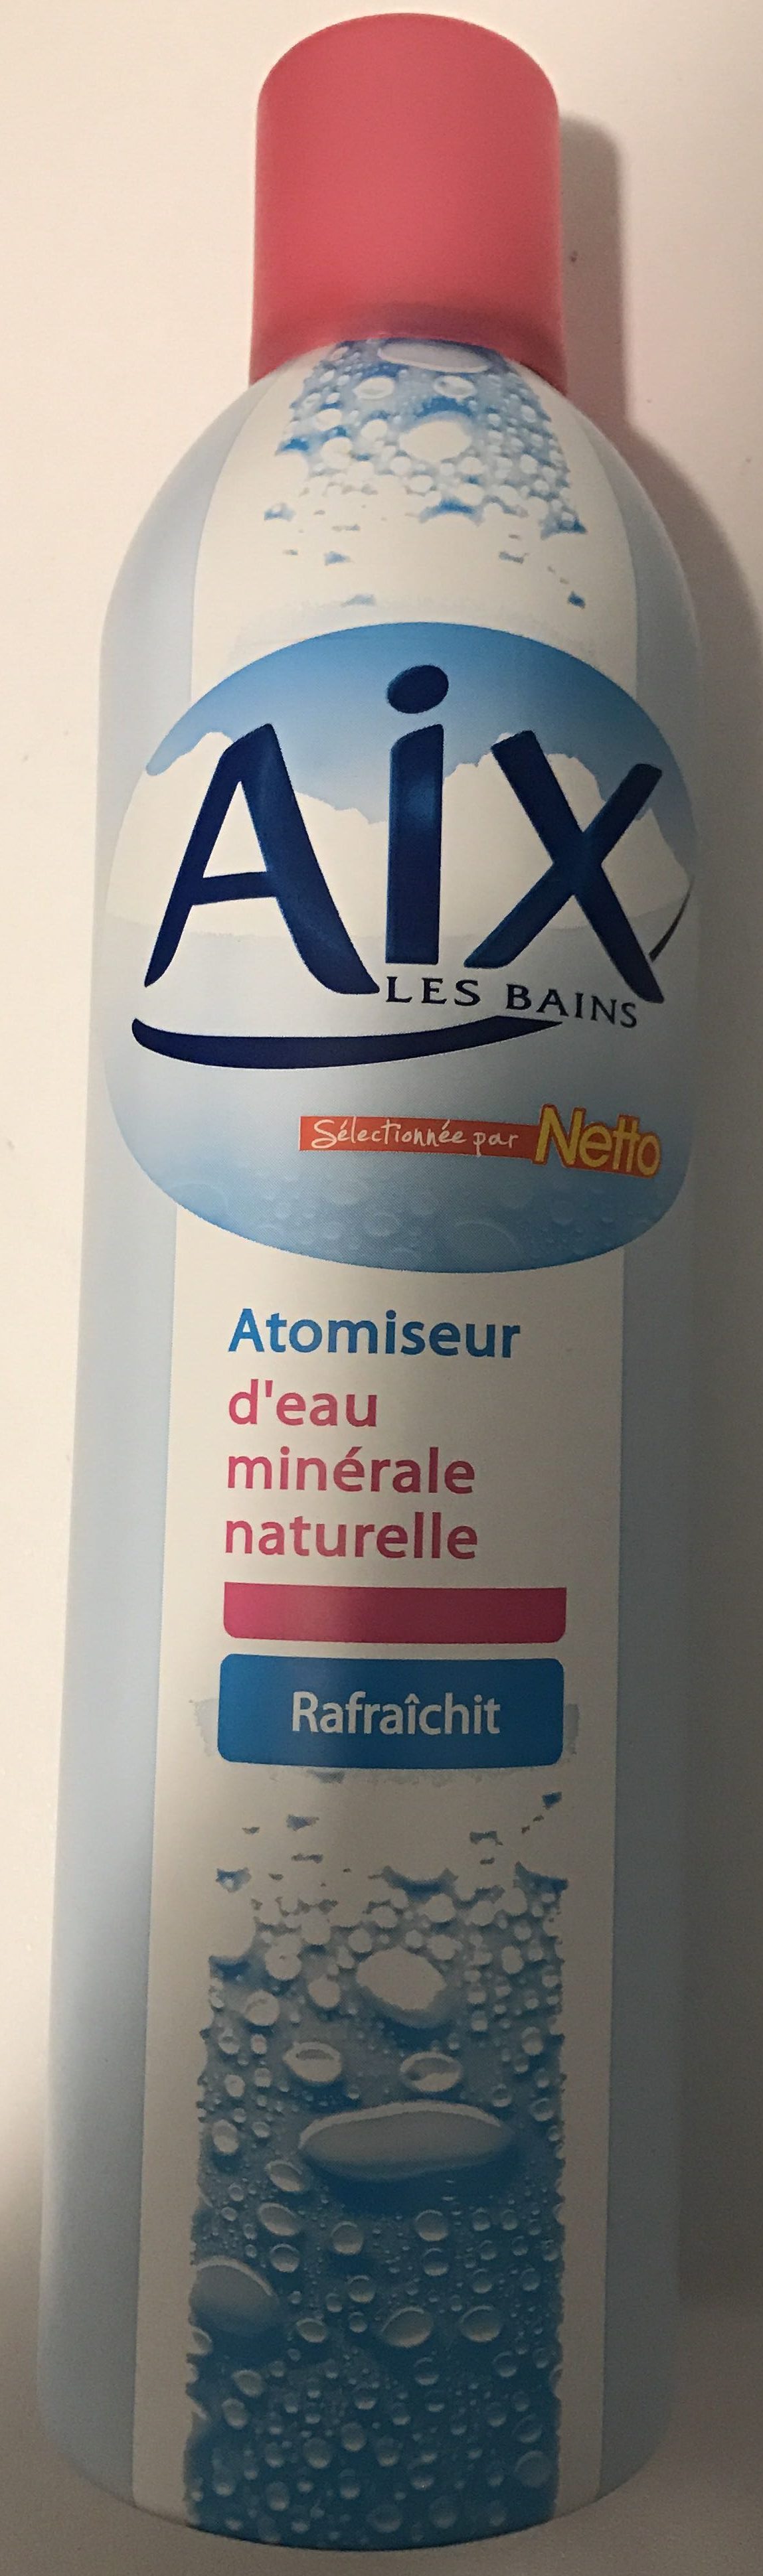 Atomiseur d'eau minérale naturelle - Produto - fr